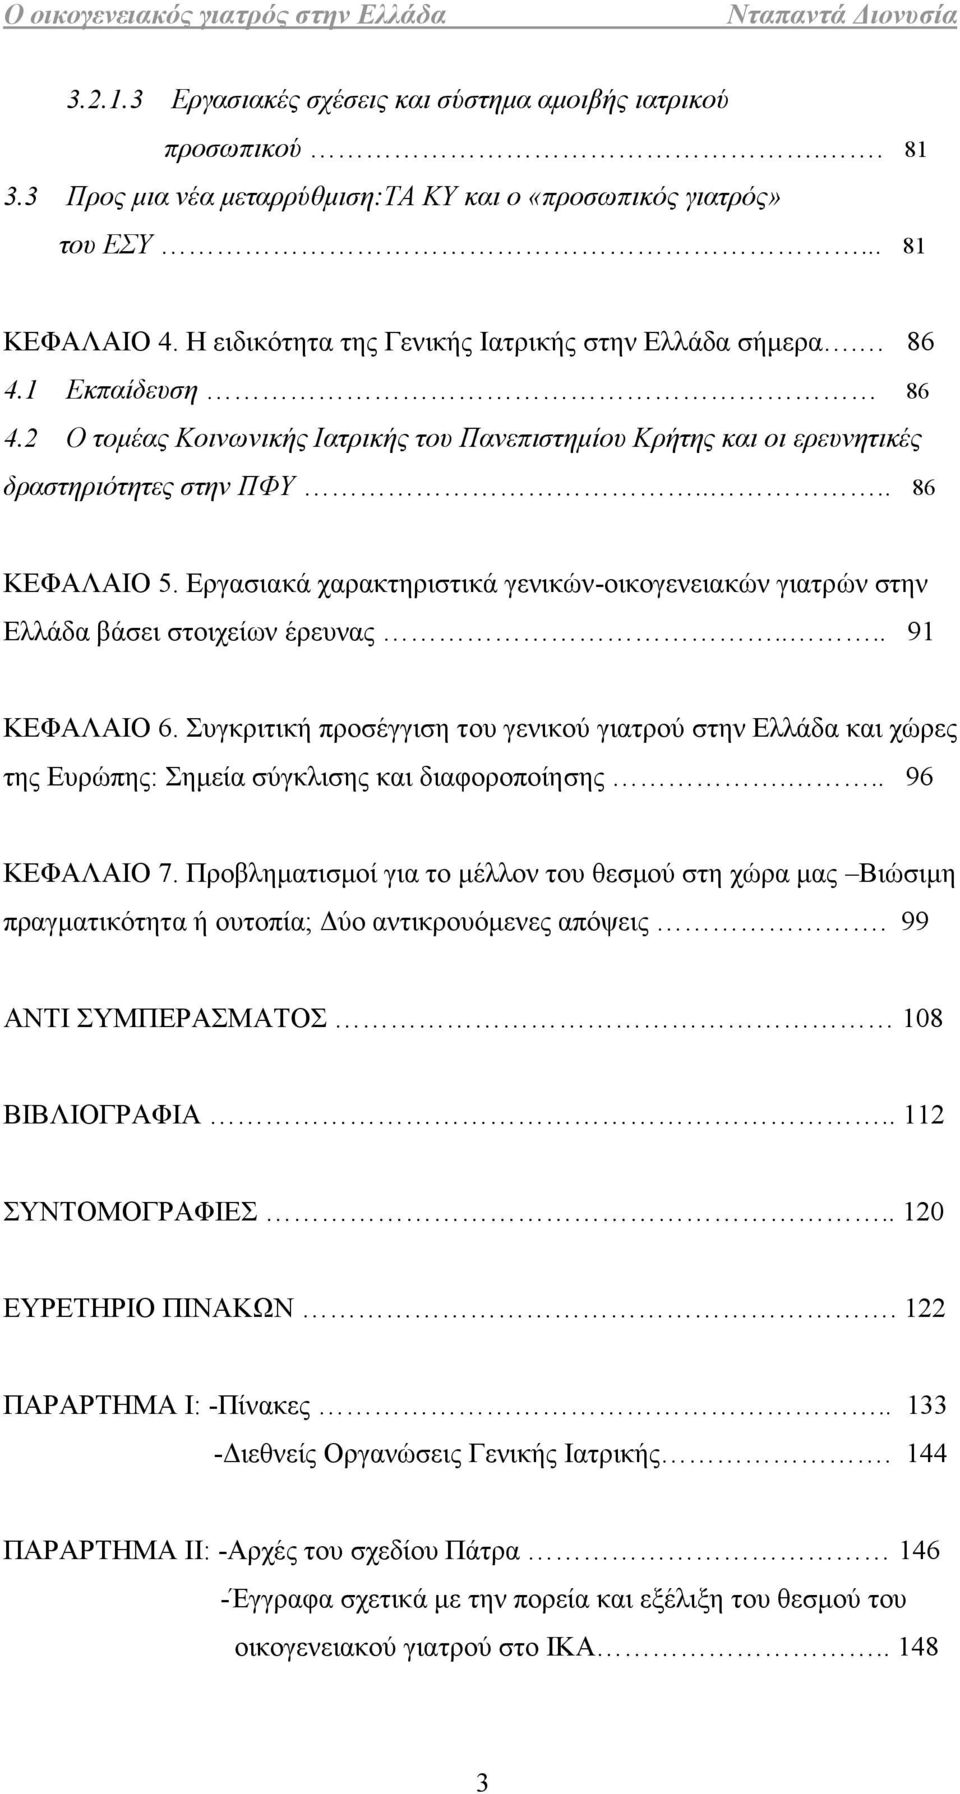 Εργασιακά χαρακτηριστικά γενικών-οικογενειακών γιατρών στην Ελλάδα βάσει στοιχείων έρευνας.... 91 ΚΕΦΑΛΑΙΟ 6.